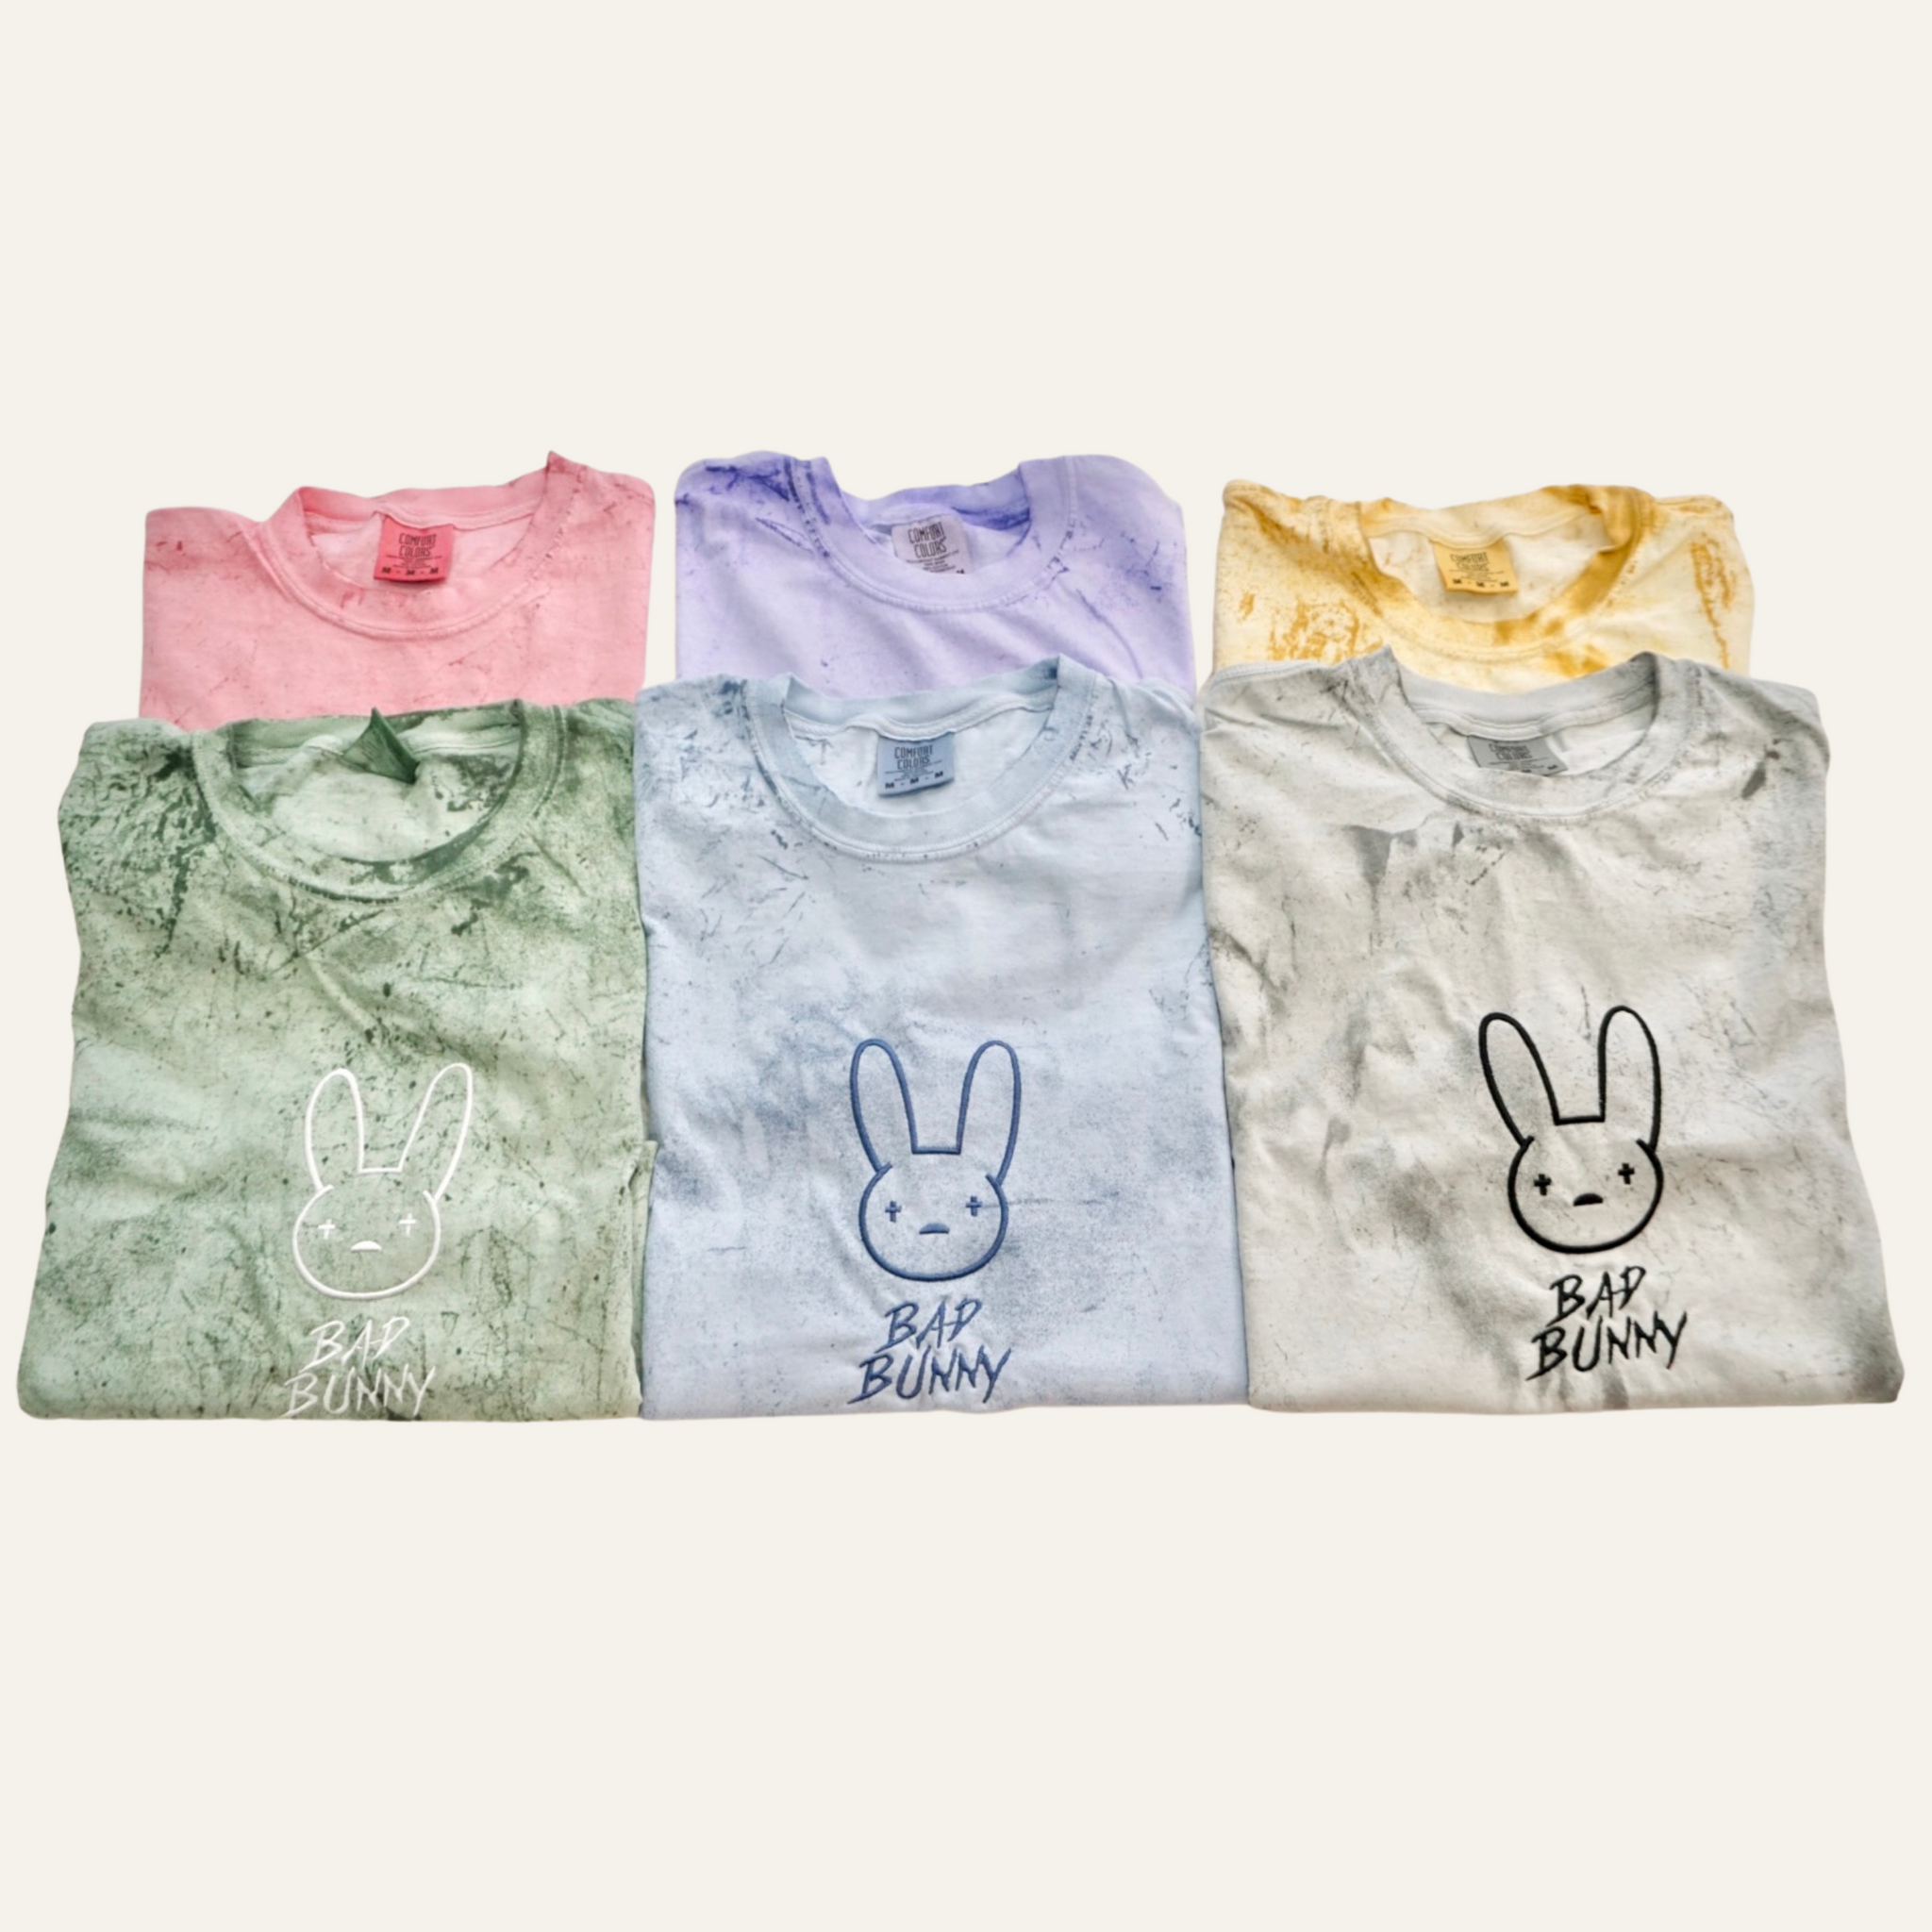 bap bunny colors